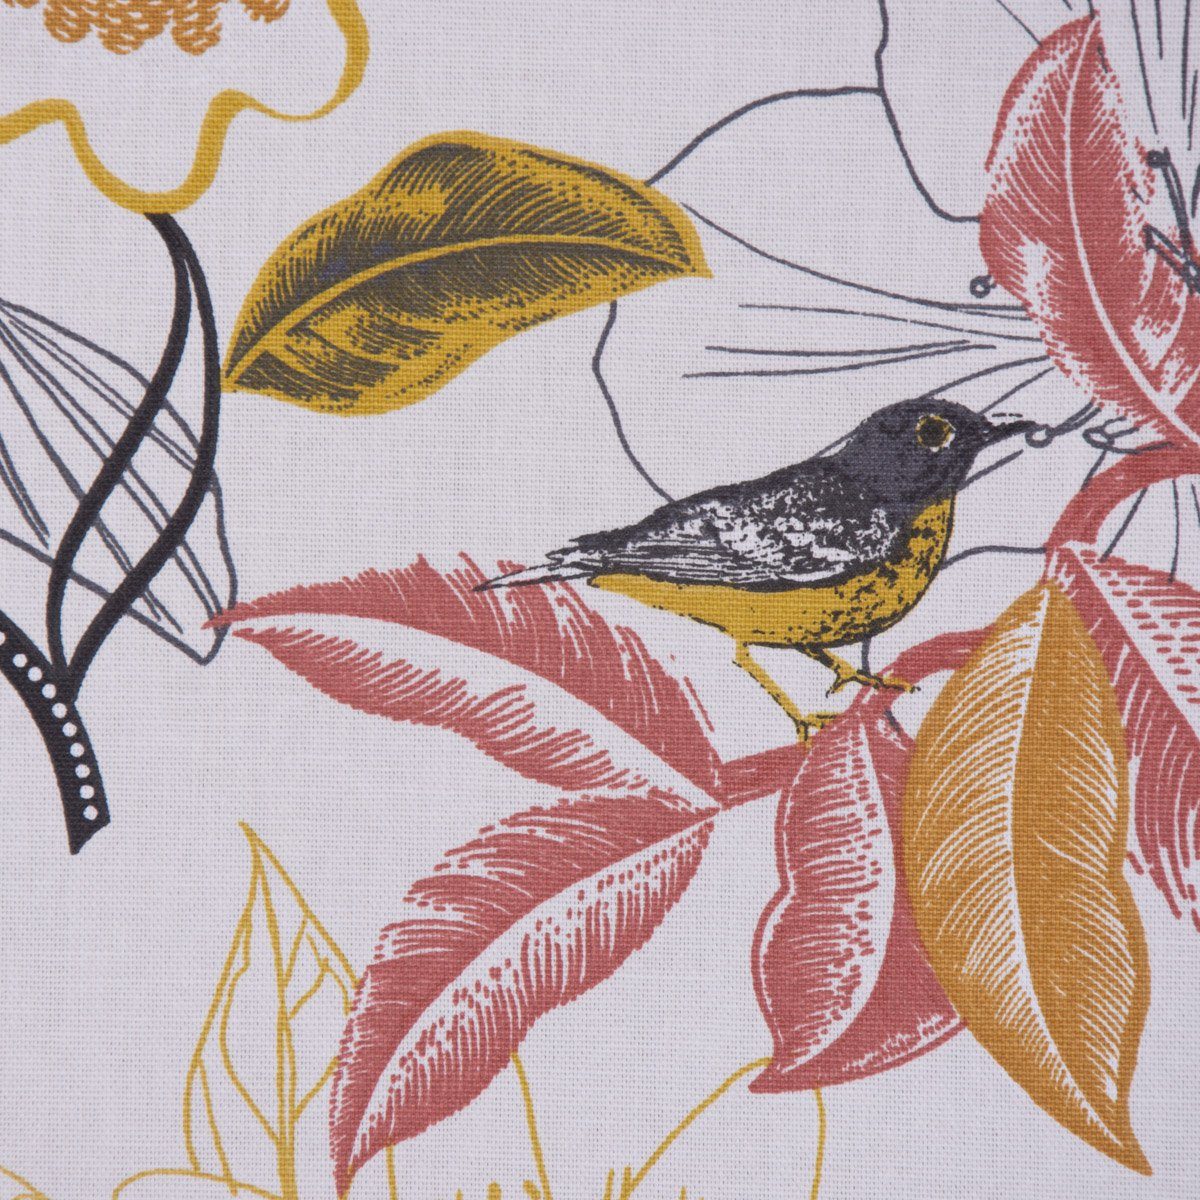 SCHÖNER LEBEN. Tischläufer handmade Vogel weiß Tischläufer rot, gelb DIVALI grau Blumen SCHÖNER LEBEN